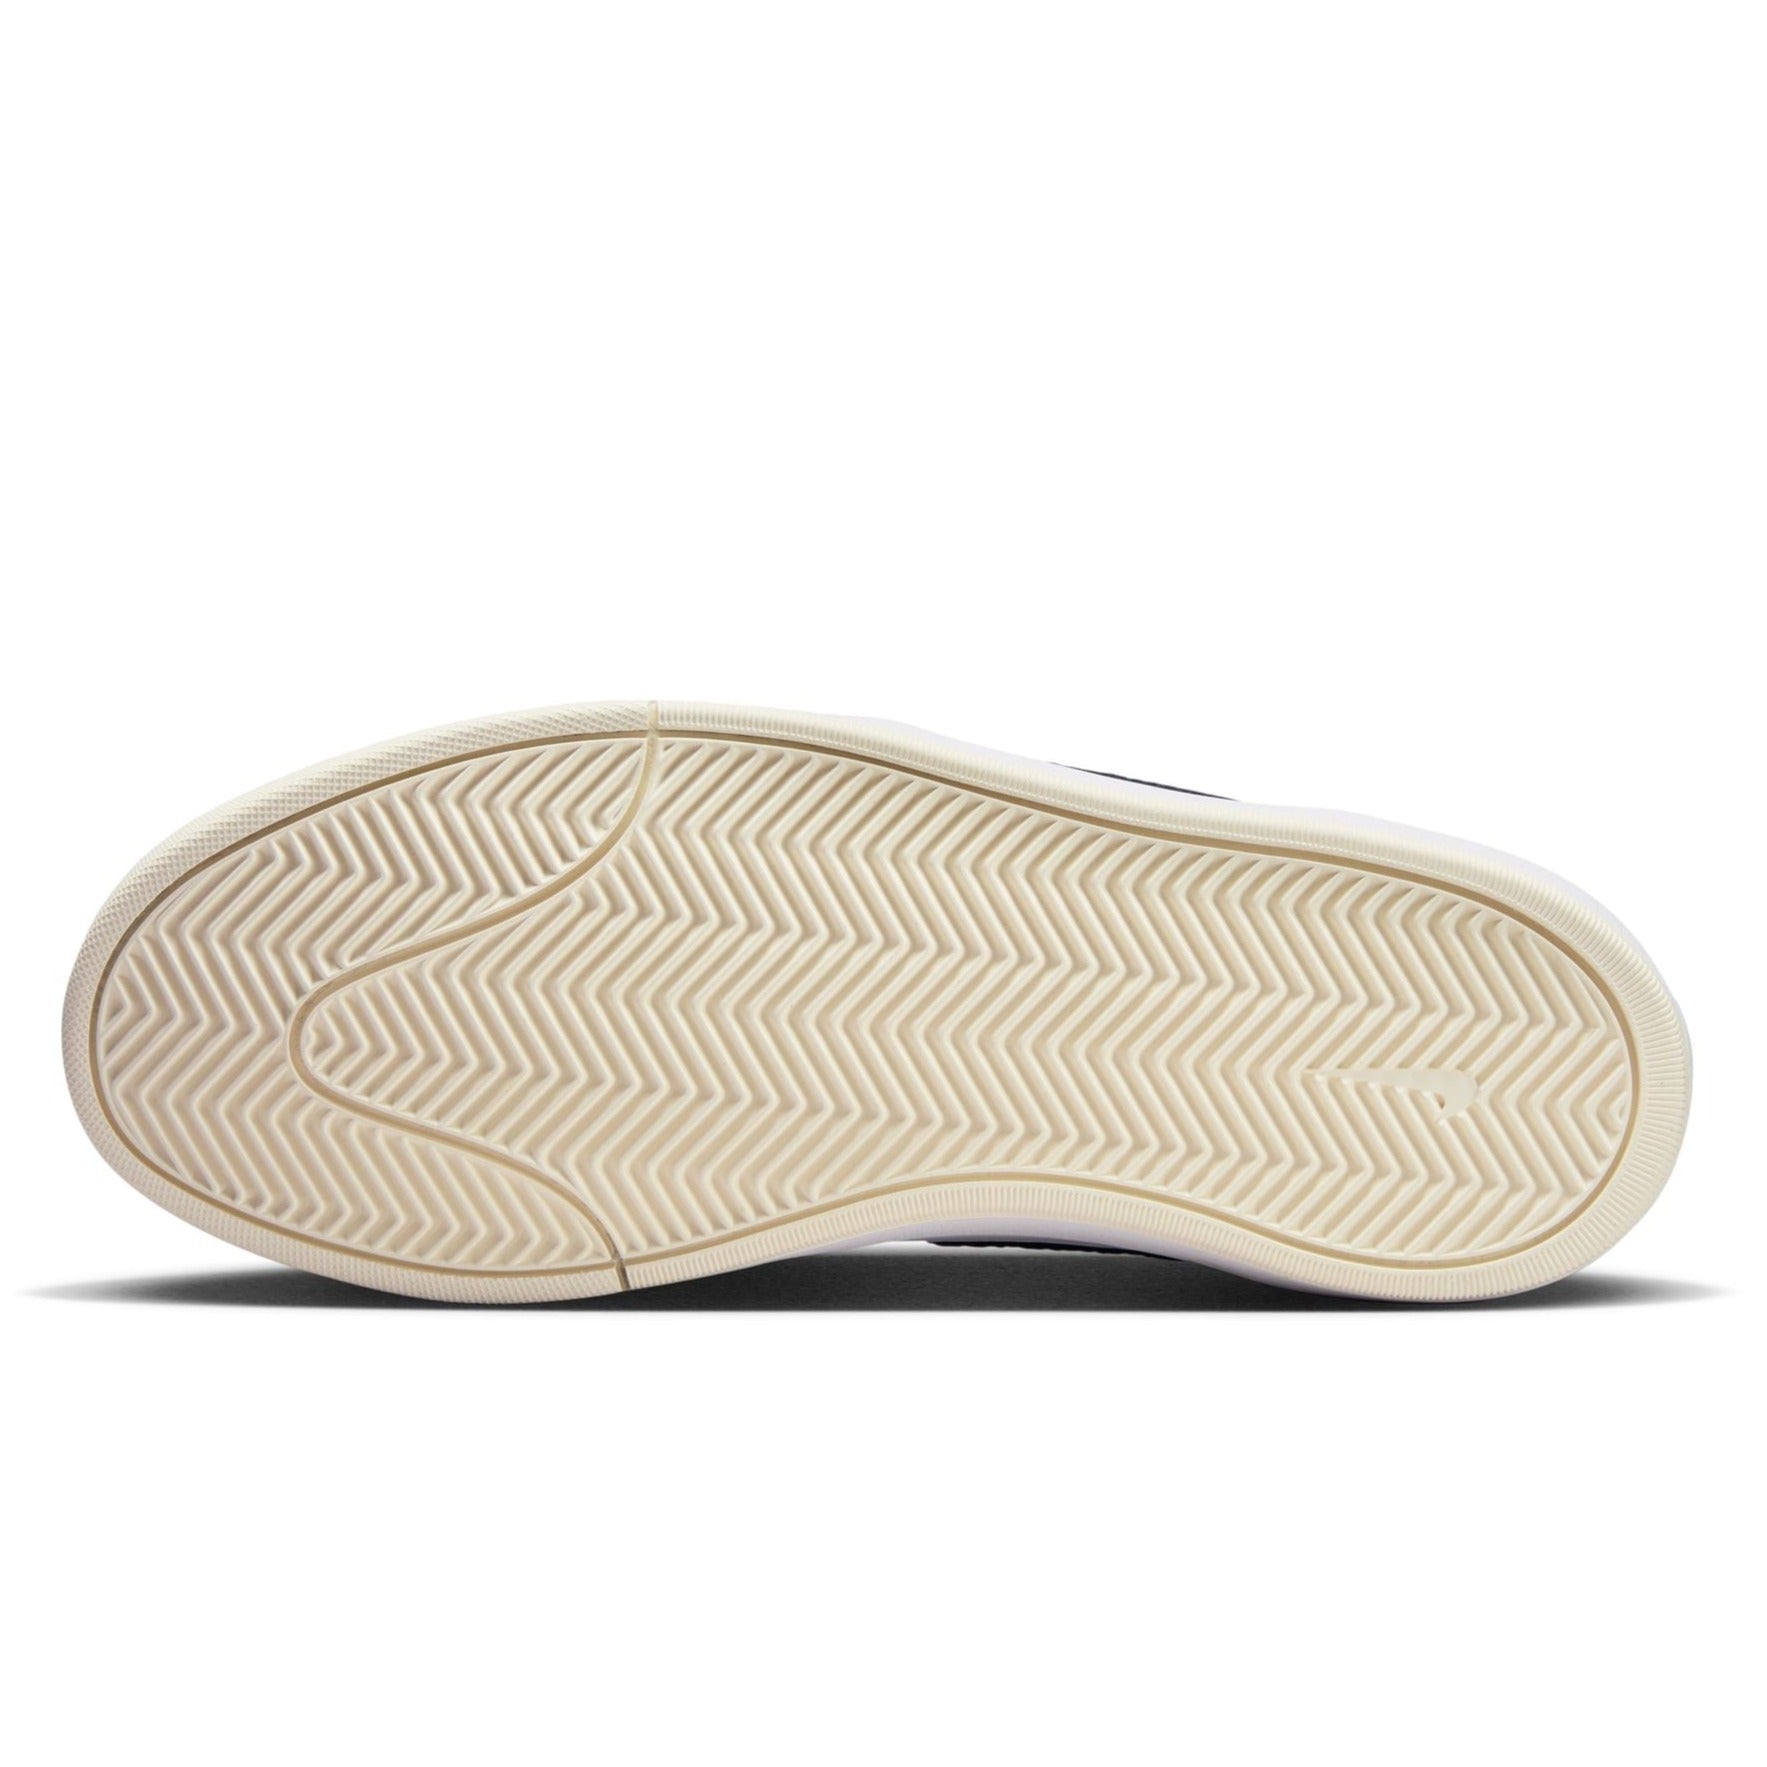 White/Navy Leo Baker Premium React Nike SB Skate Shoe Bottom